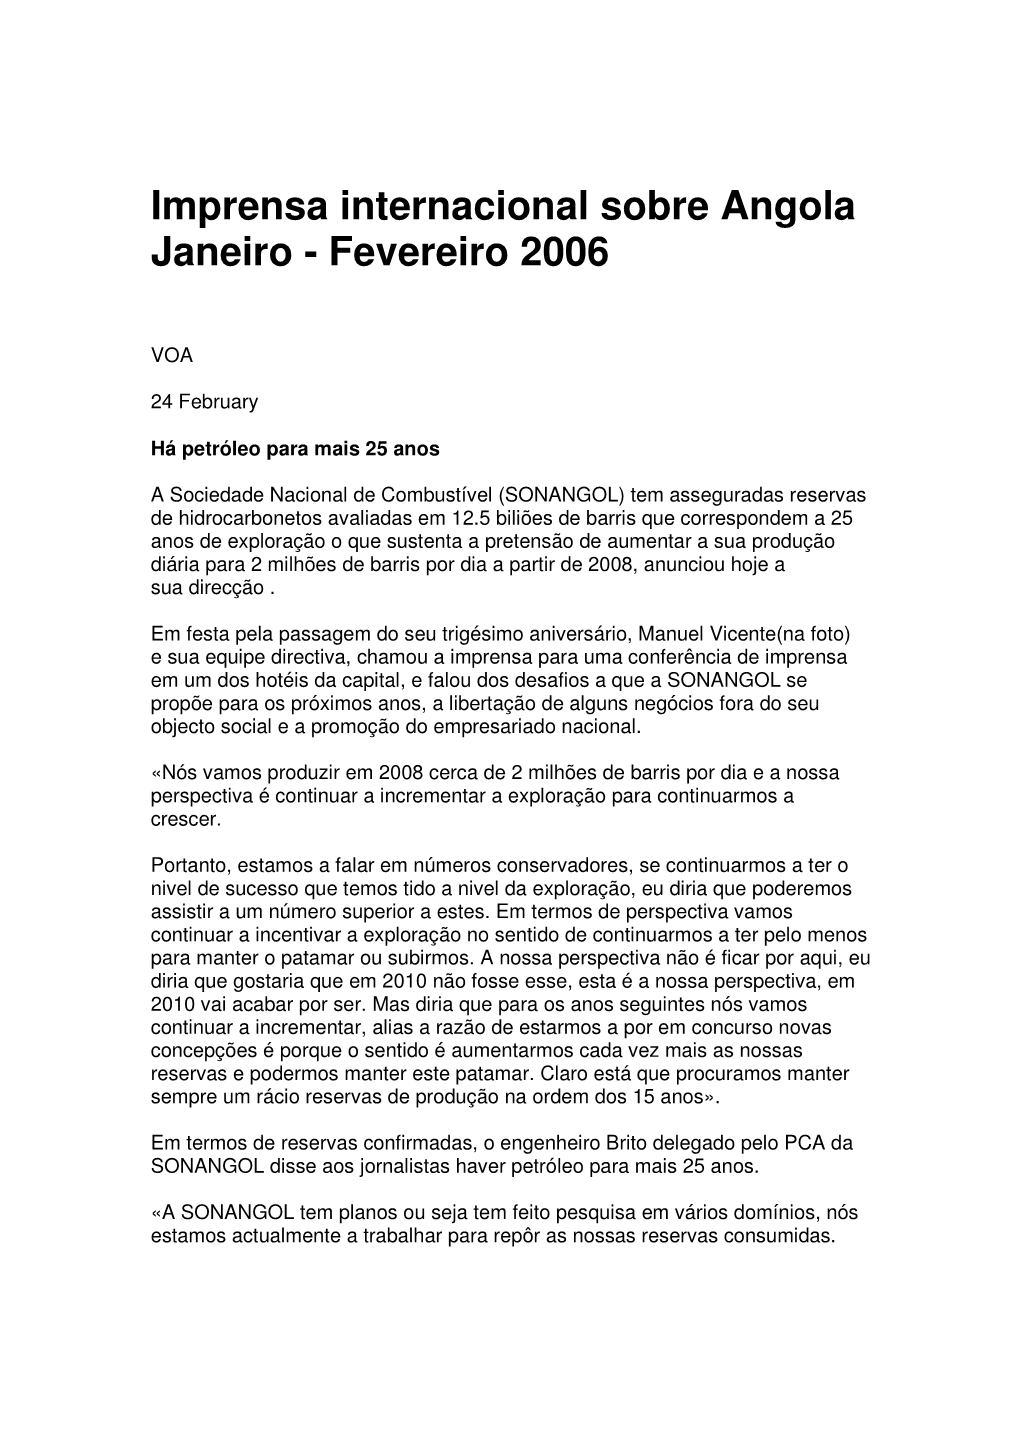 Imprensa Internacional Sobre Angola Janeiro - Fevereiro 2006